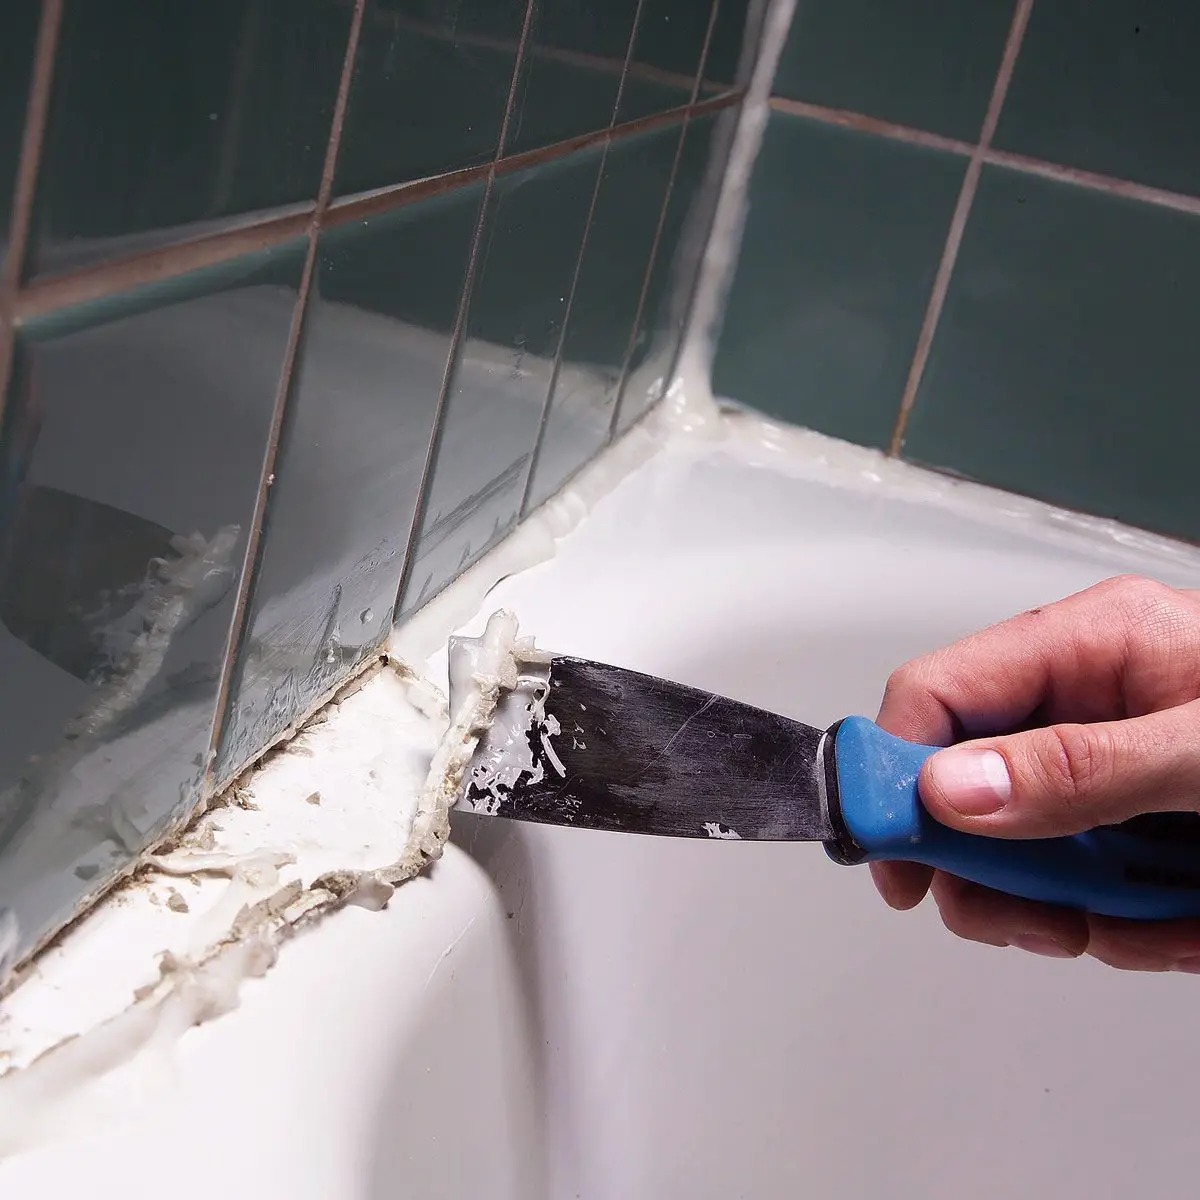 How To Remove Moldy Caulk From Bathtub